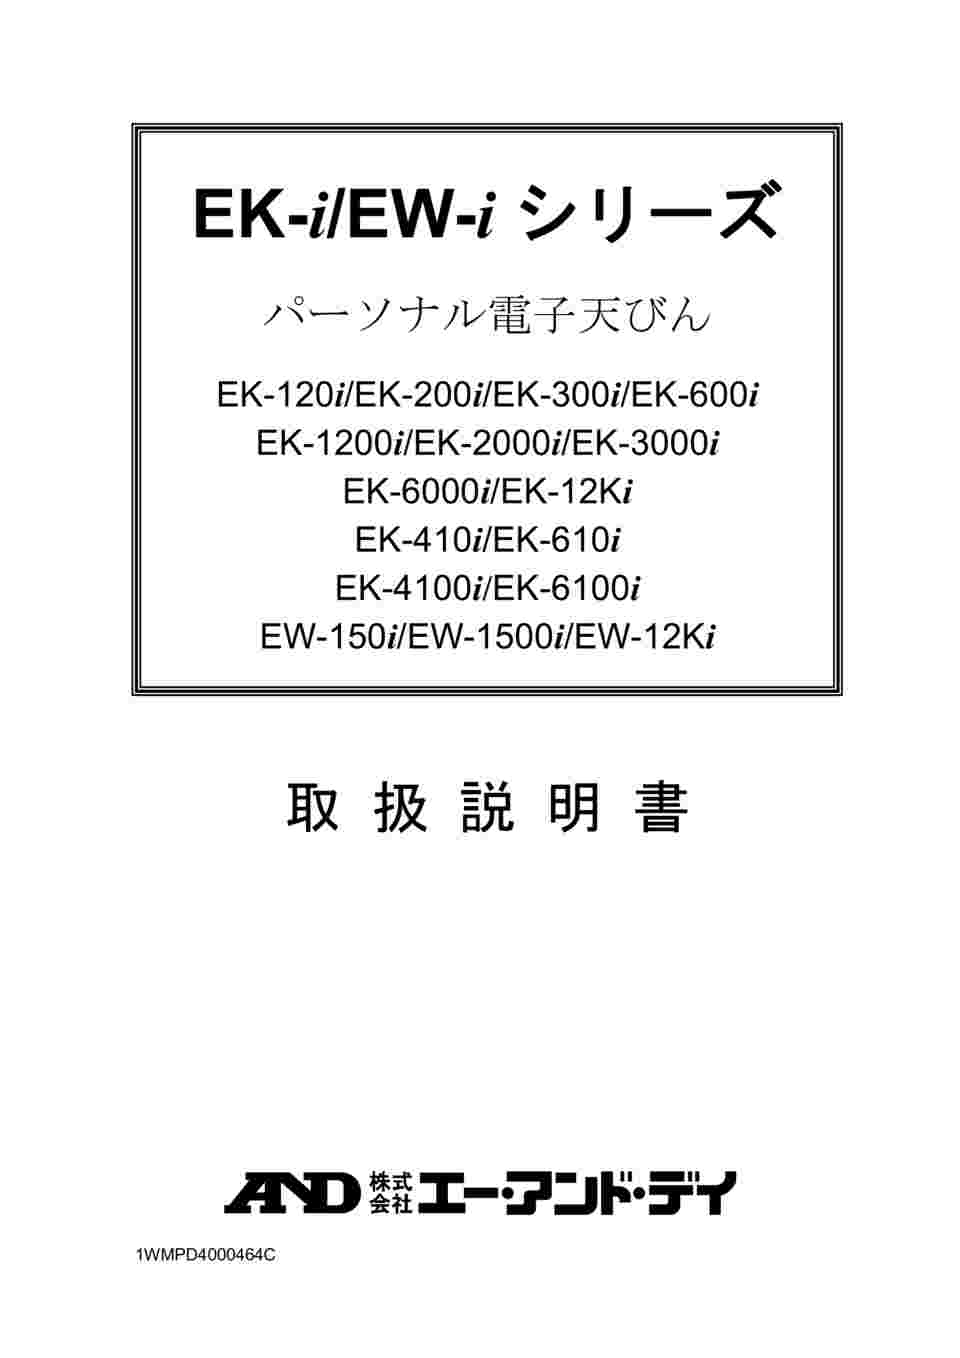 1-4465-04-56 パーソナル電子天秤 英語版校正証明書付 EK1200i 【AXEL 